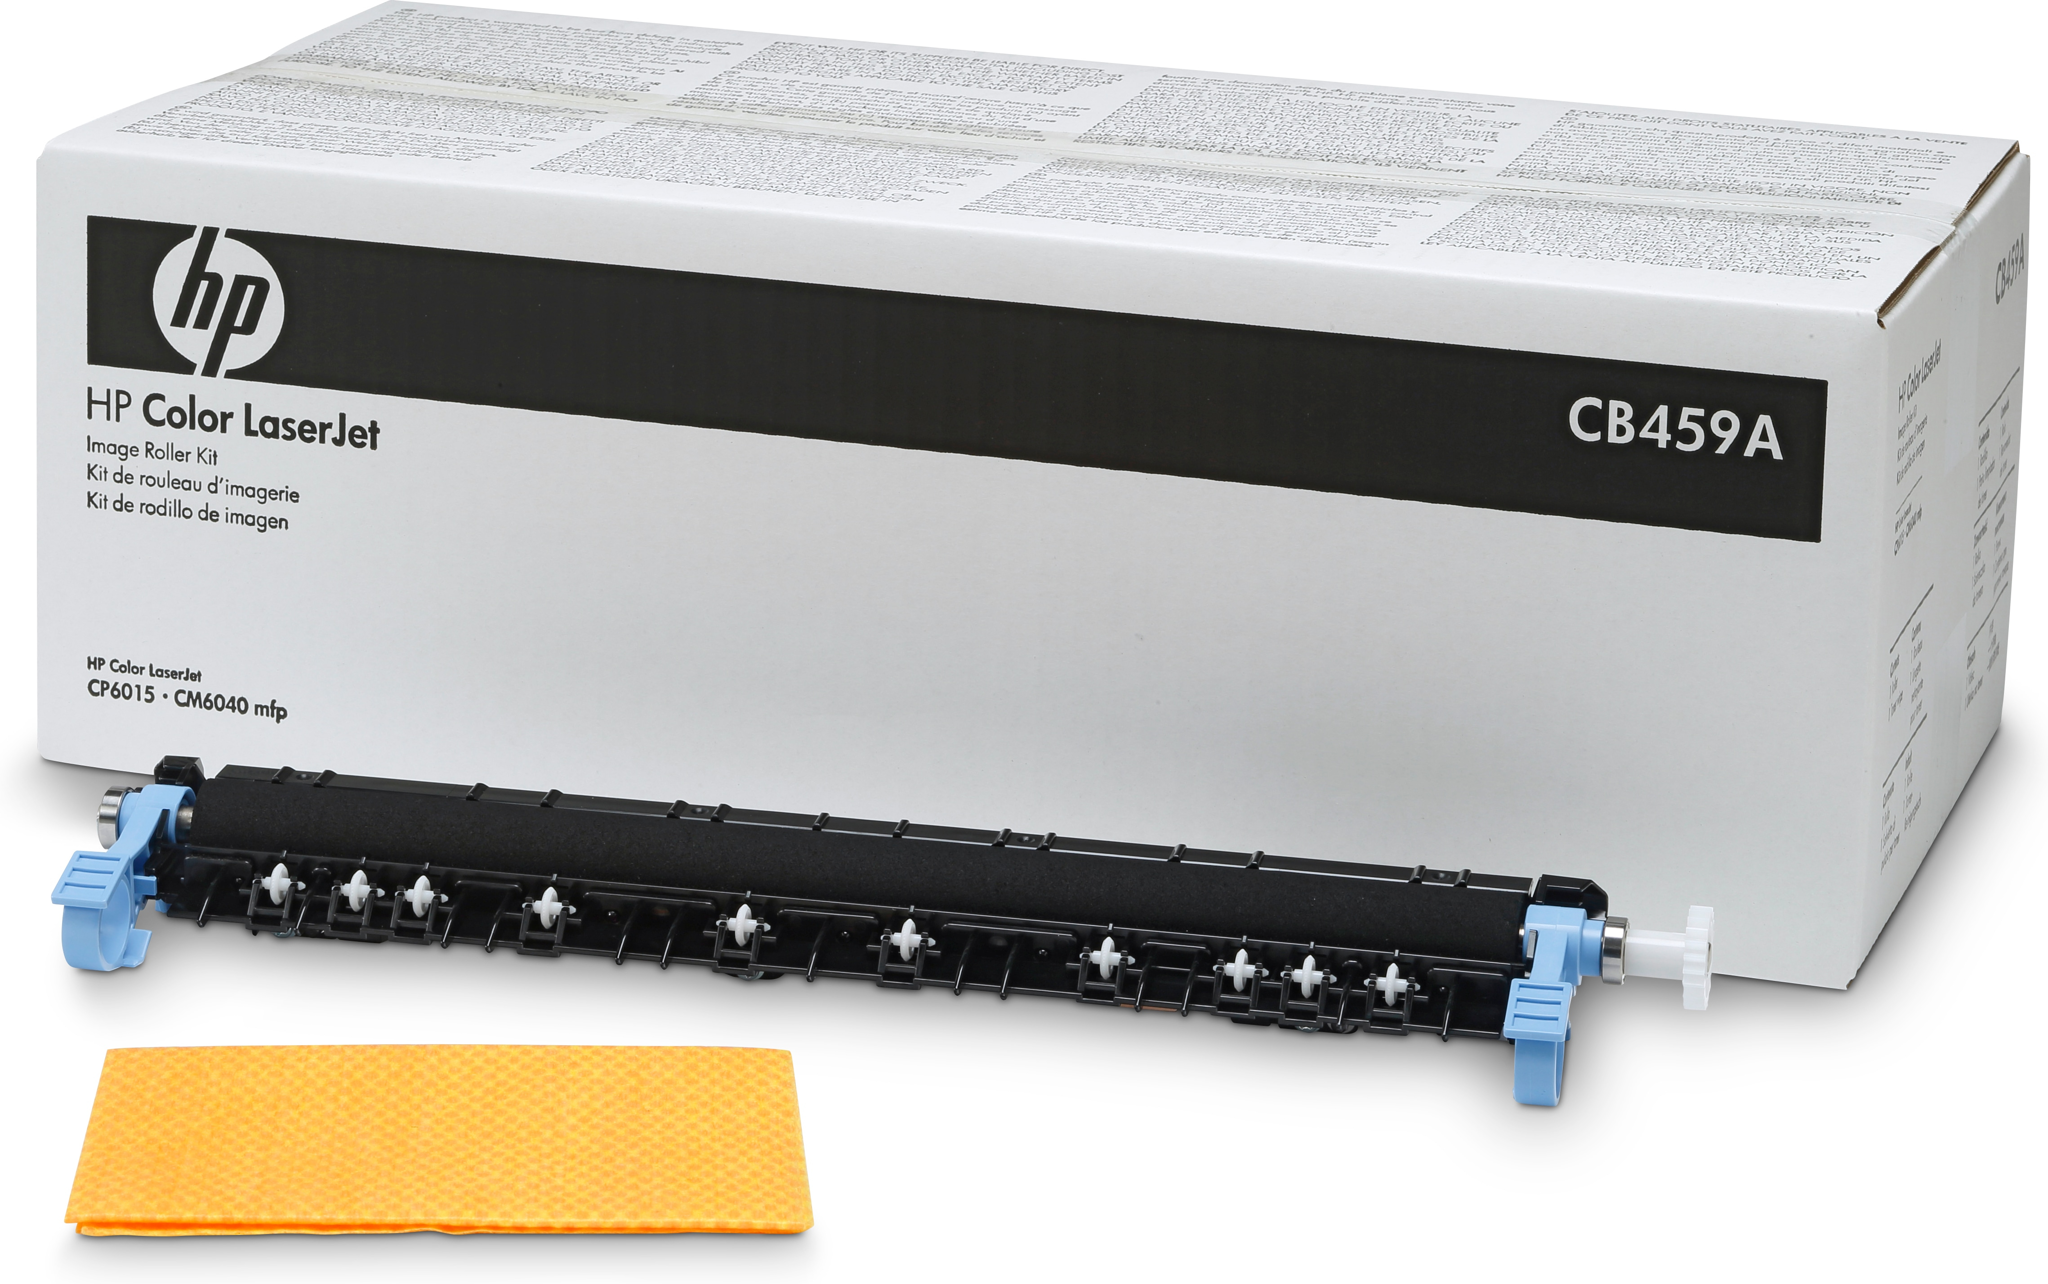 Bild von HP Color LaserJet CB459A Roller Kit, 150000 Seiten, Laser, 495,05 x 235,97 x 165,1 mm, Schwarz, HP Color LaserJet CP6015/CM6040MFP Verbrauchsmaterial-Kits funktionieren mit:, CB459A